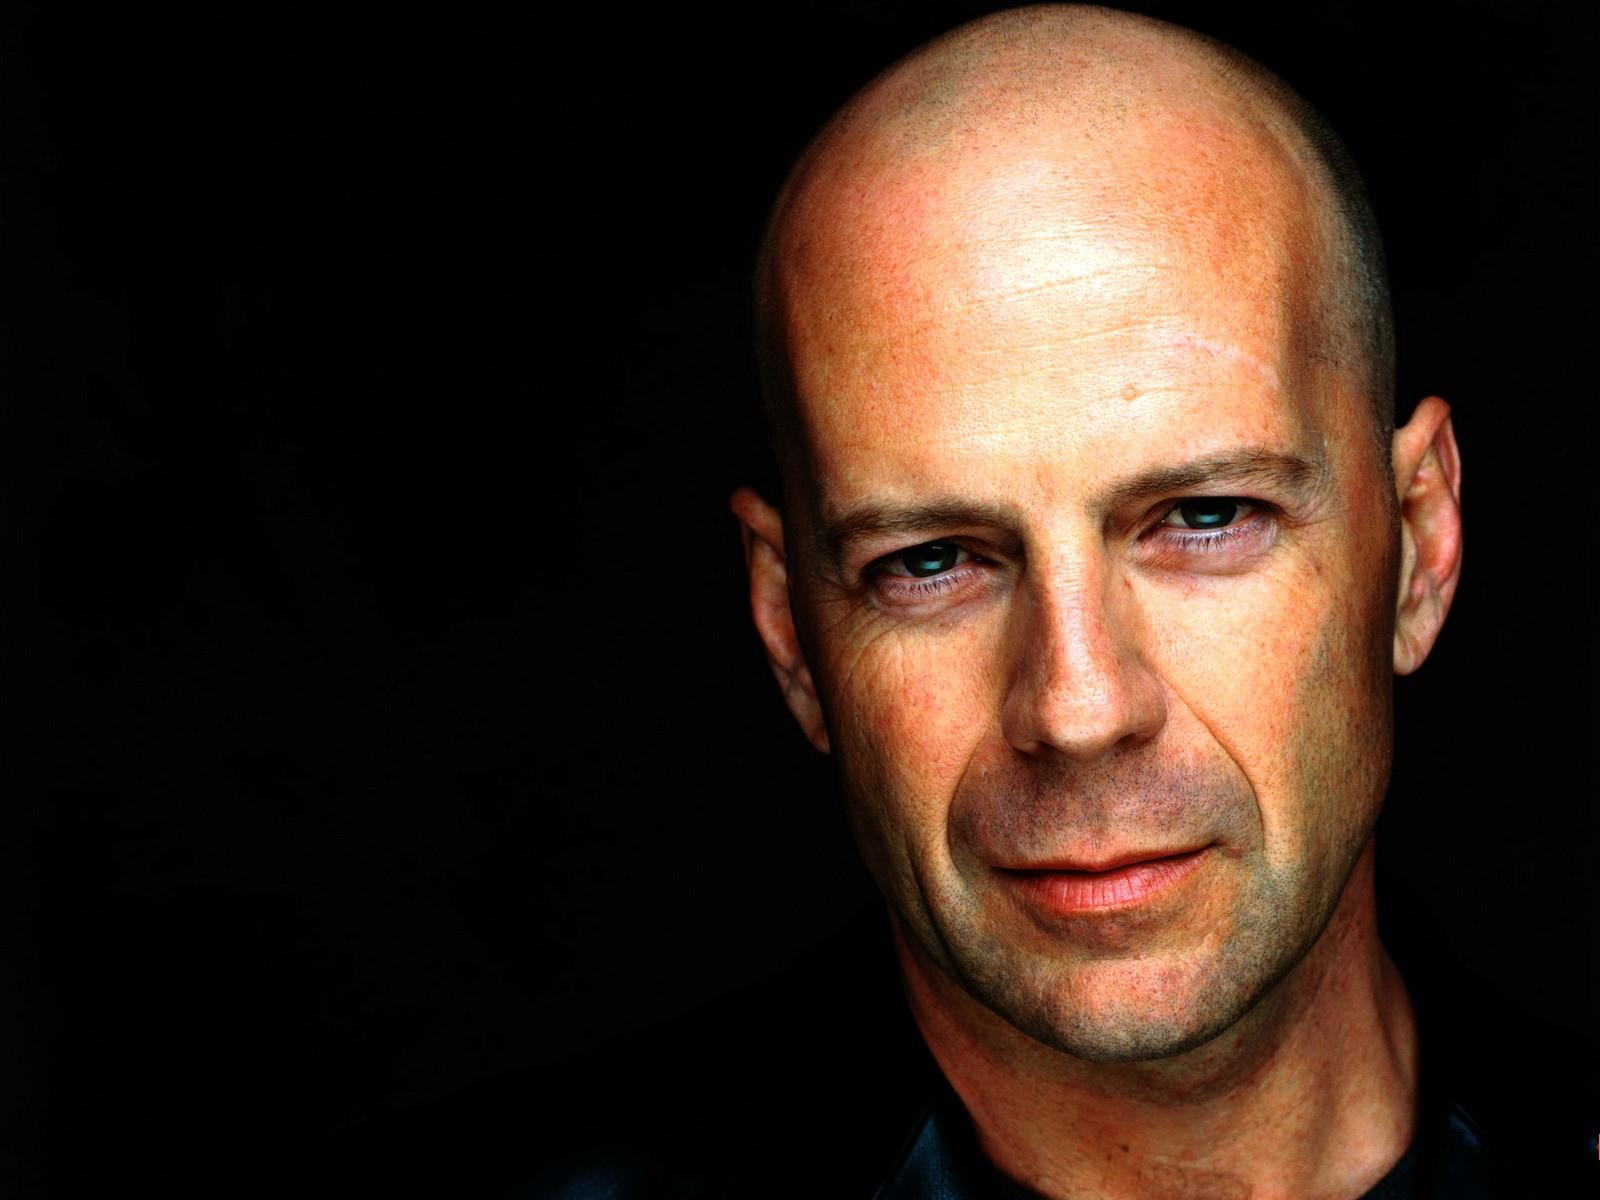 Wallpaper Bruce Willis Bald Celebrities